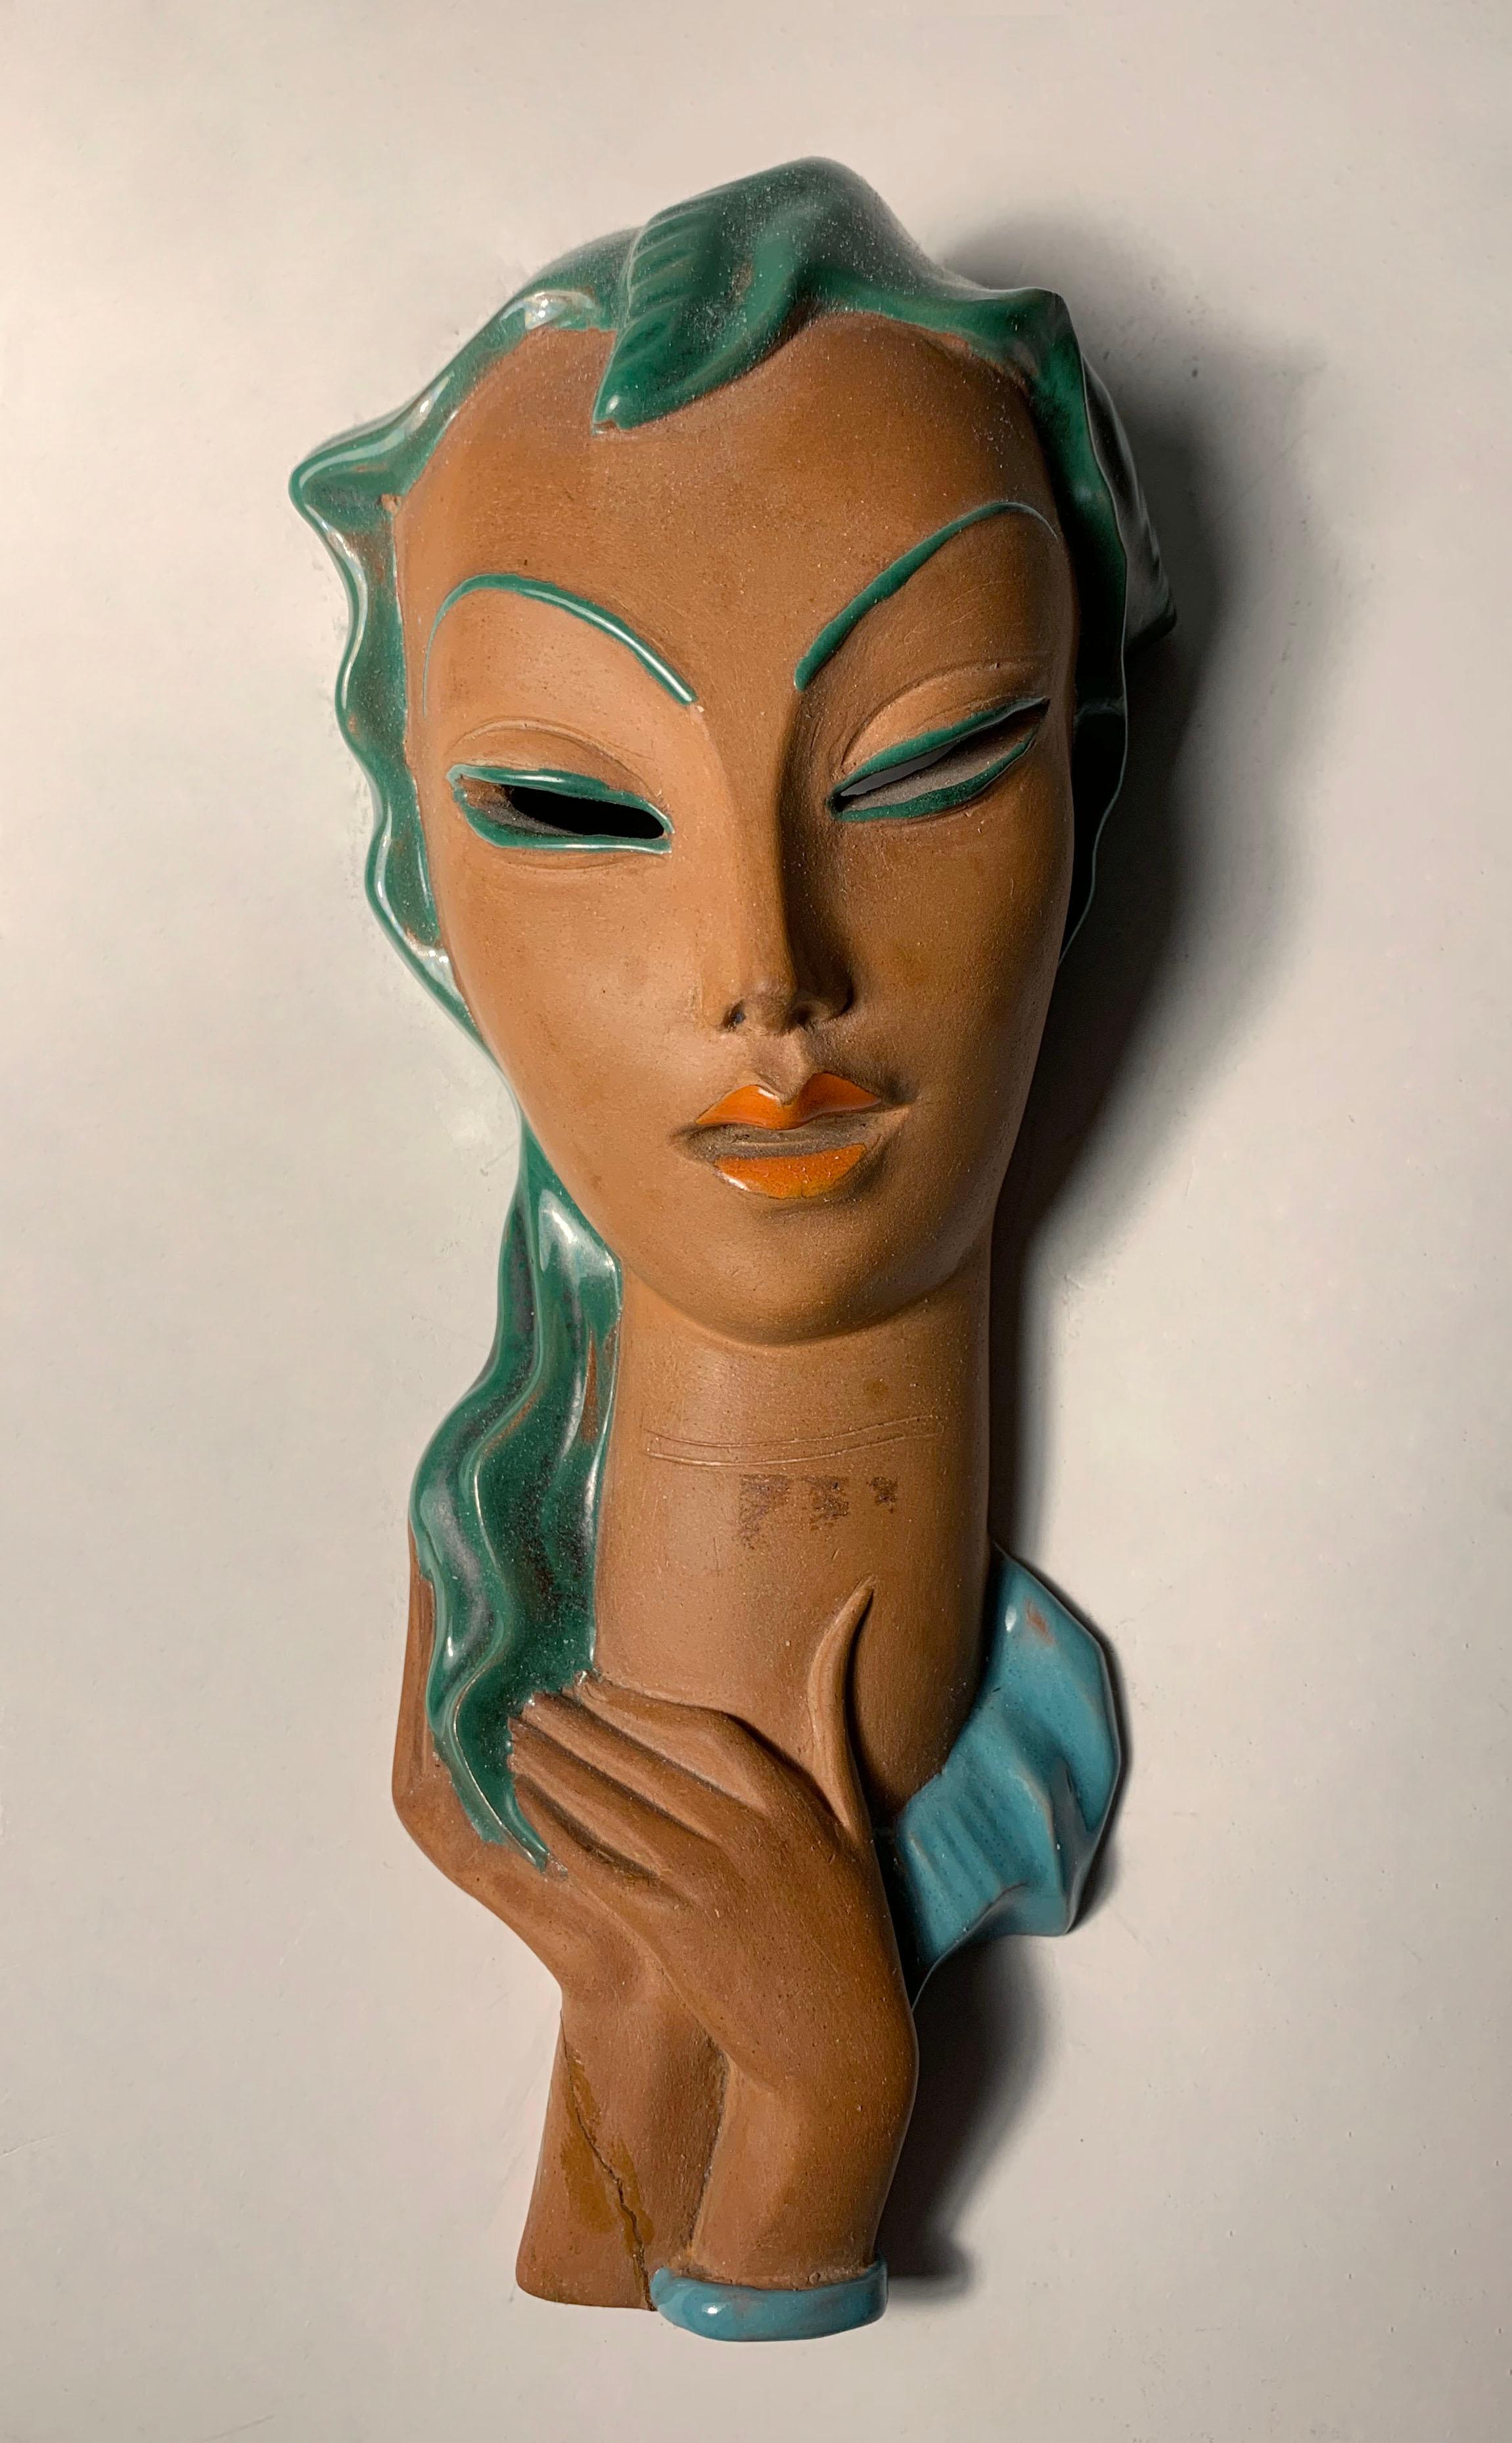 Italienische Keramikbüste einer Frau im Art-Deco-Stil. Ähnlich wie die Werke von Goldsheider. Diese Maske ist auf der Rückseite mit der Aufschrift 